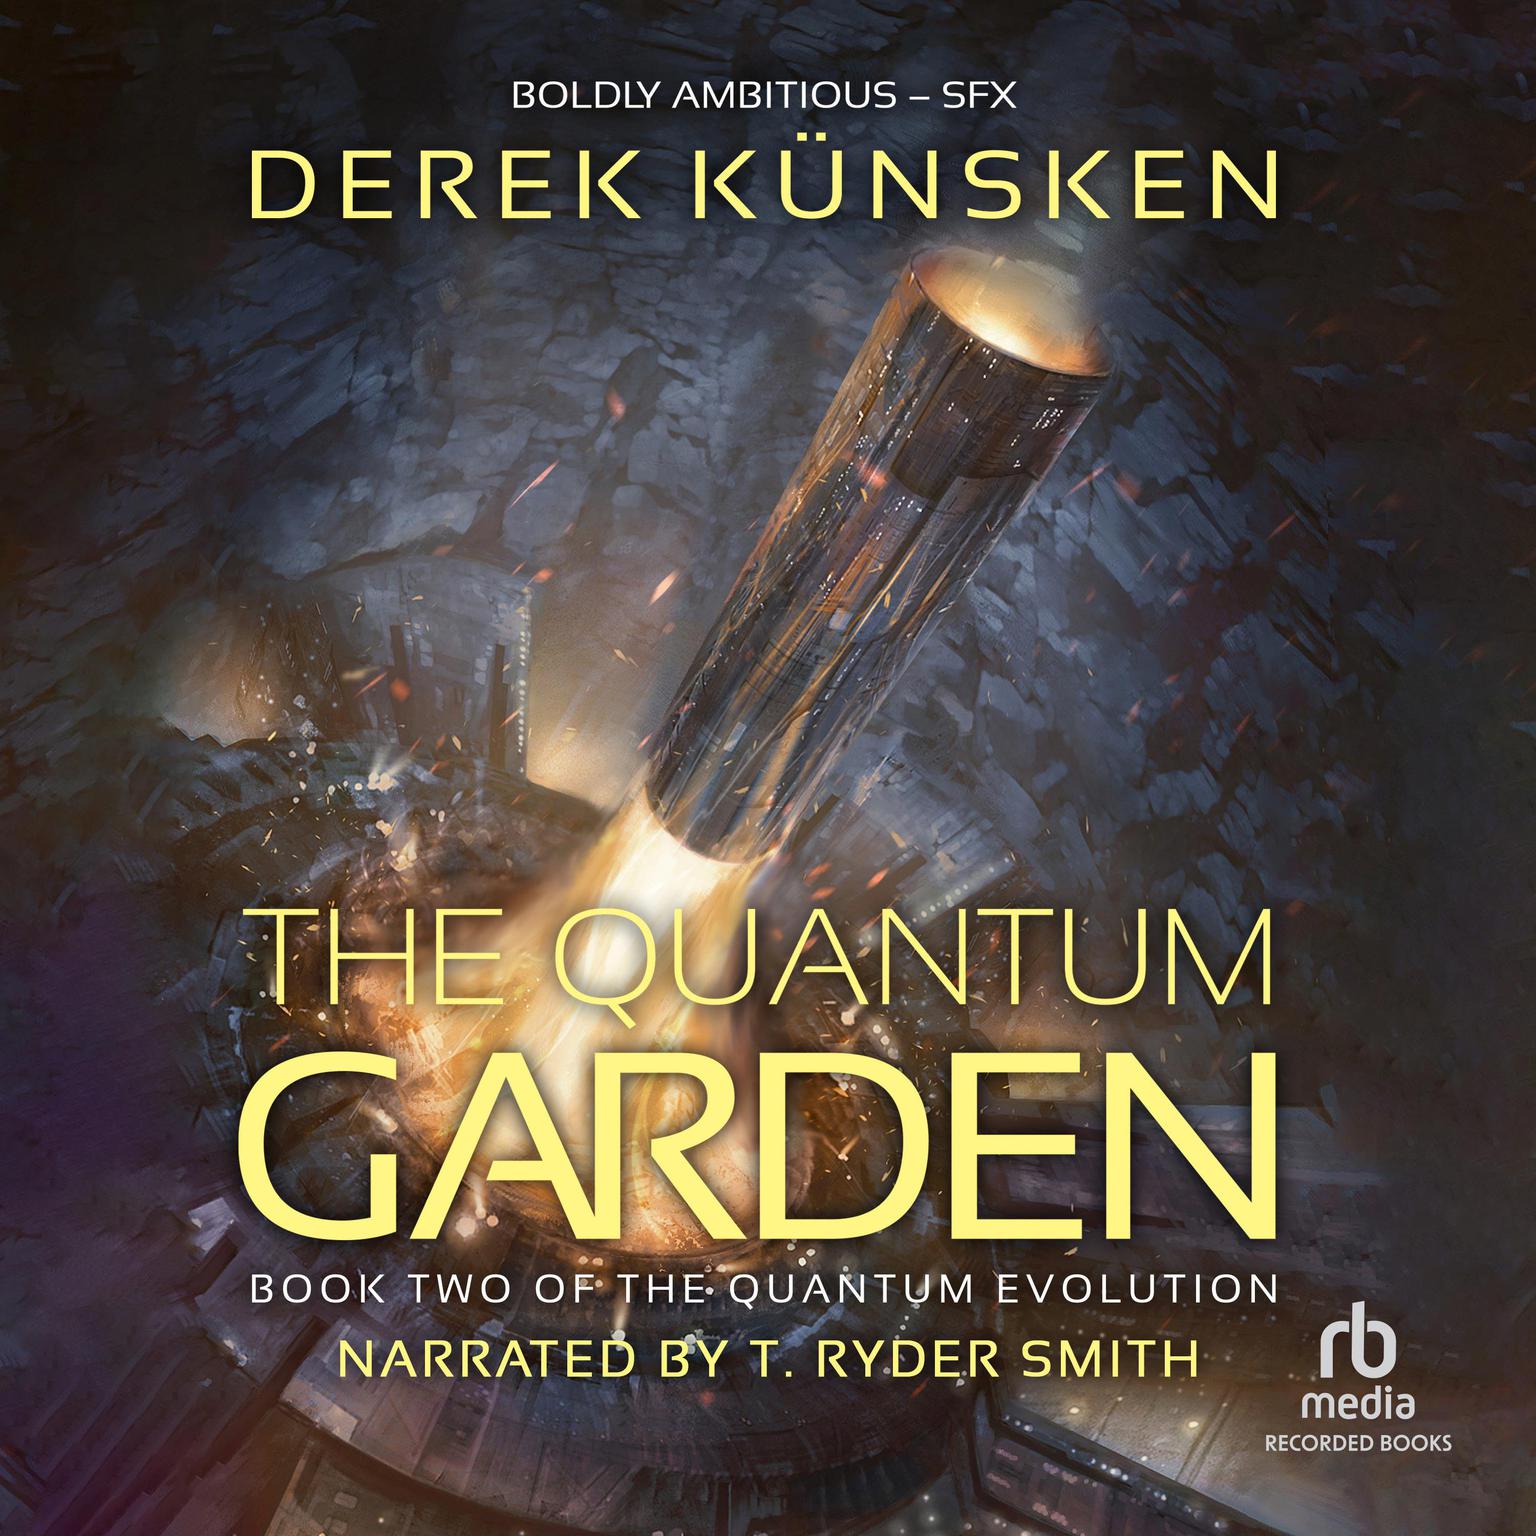 Quantum Garden Audiobook, by Derek Künsken